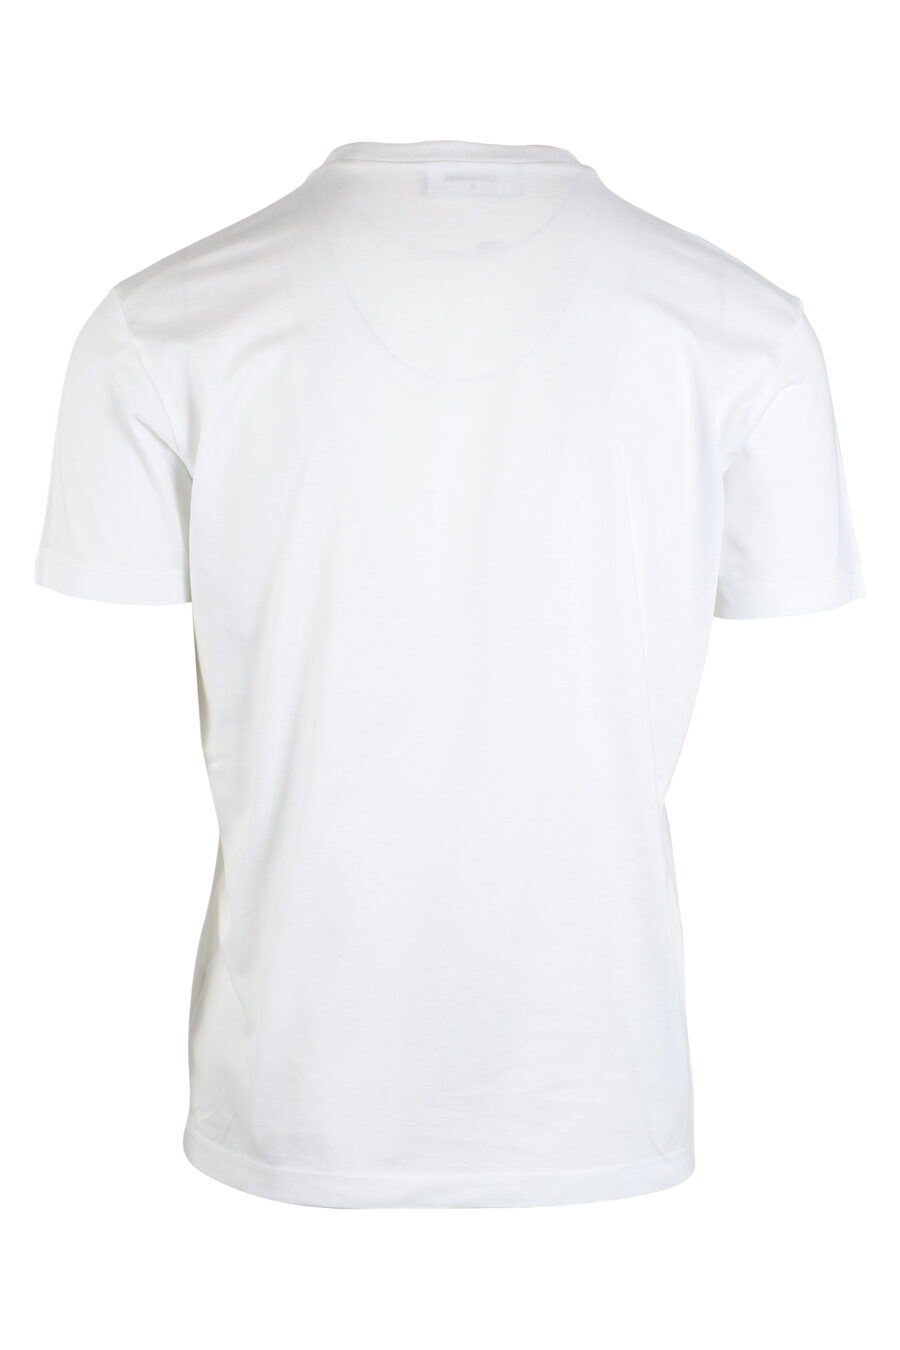 T-shirt branca com maxilogo "icon" - IMG 0671